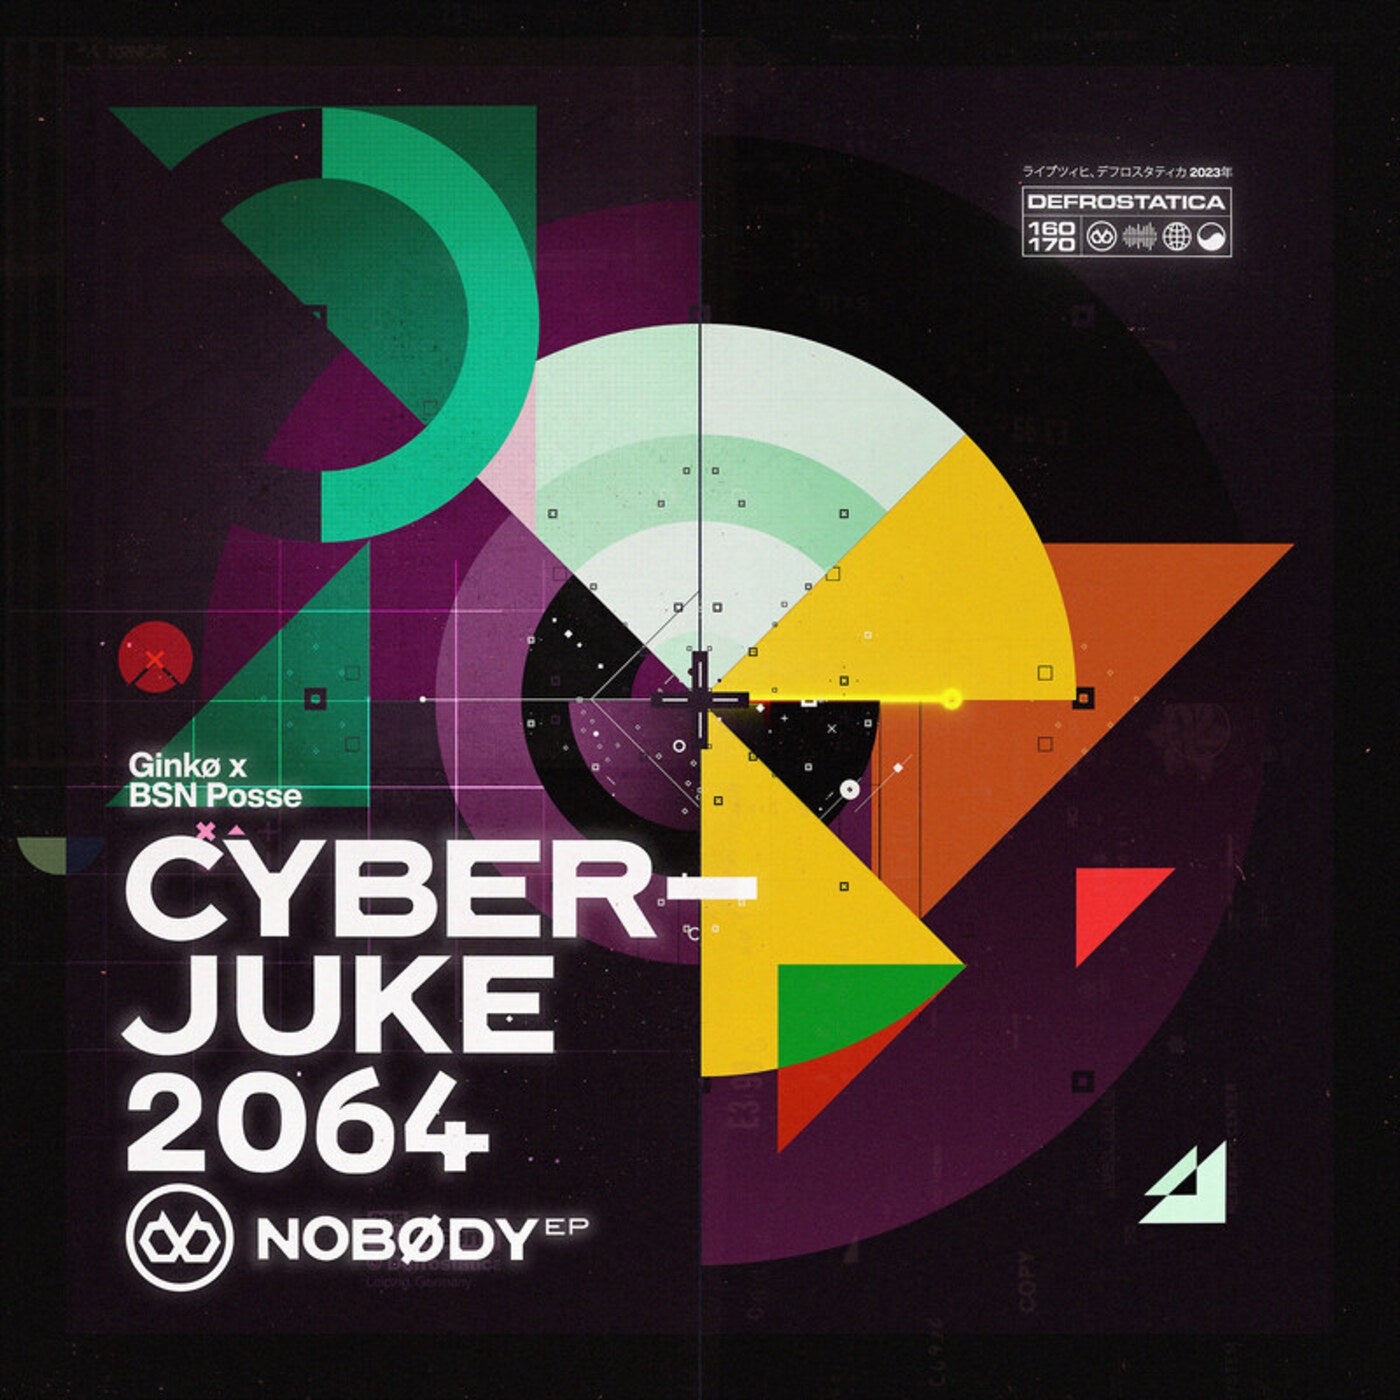 CyberJuke 2064